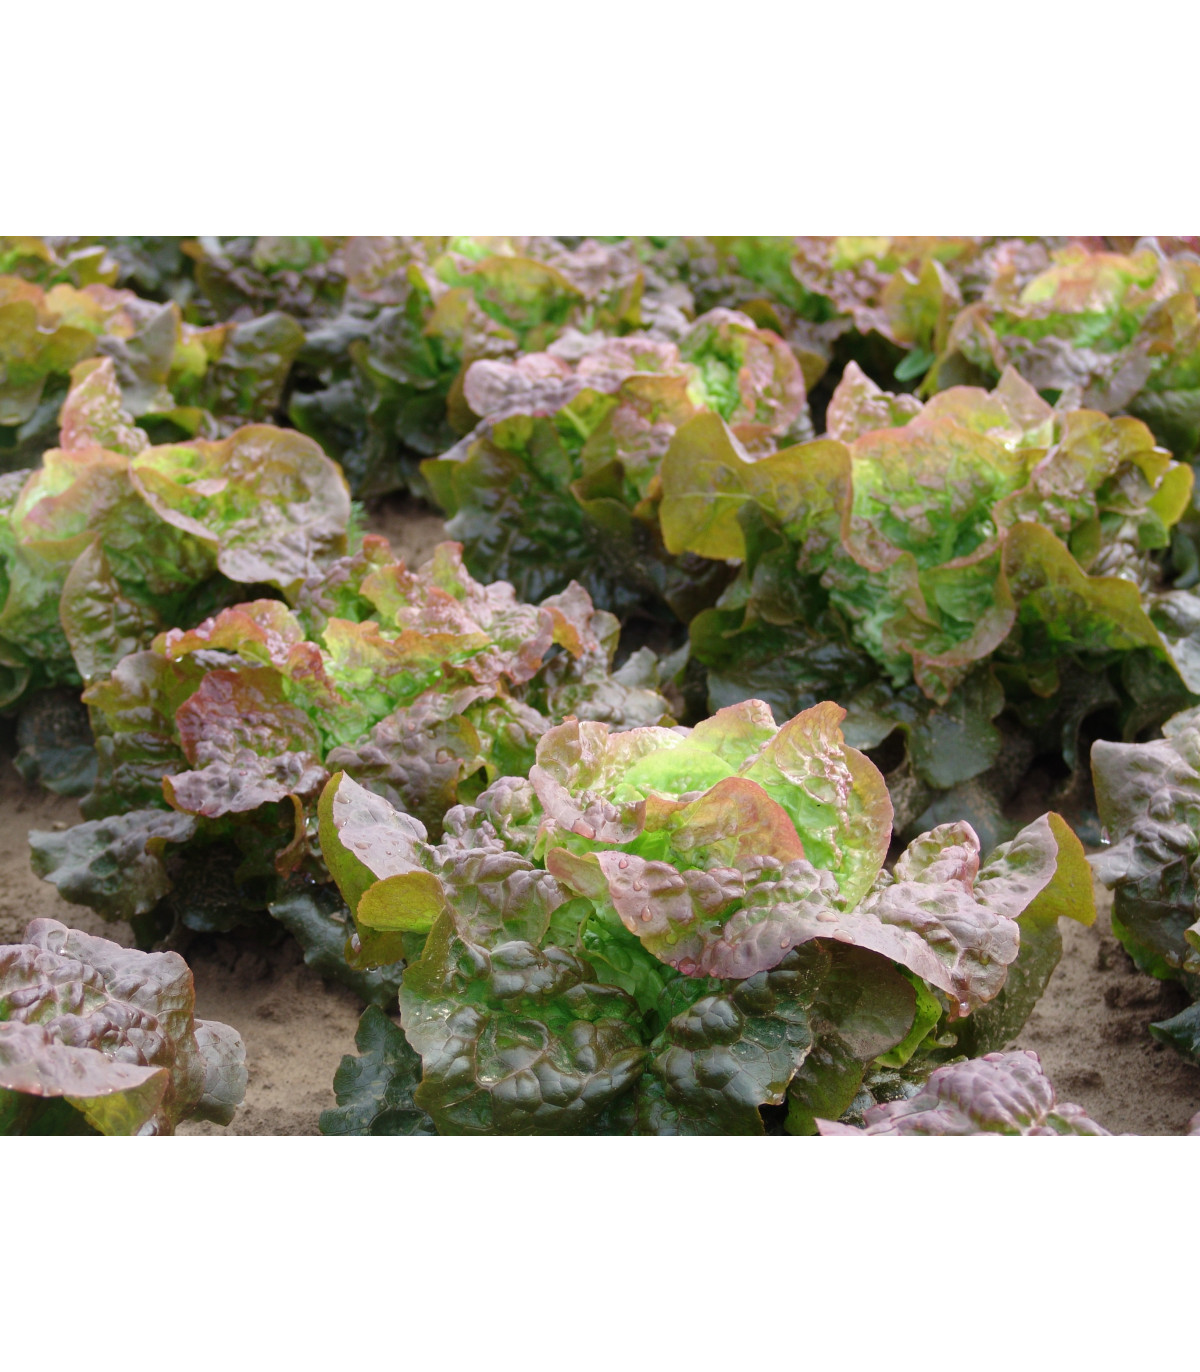 Salát hlávkový červený Rosemarry - Lacrusa sativa - osivo salátu - 0,3 gr